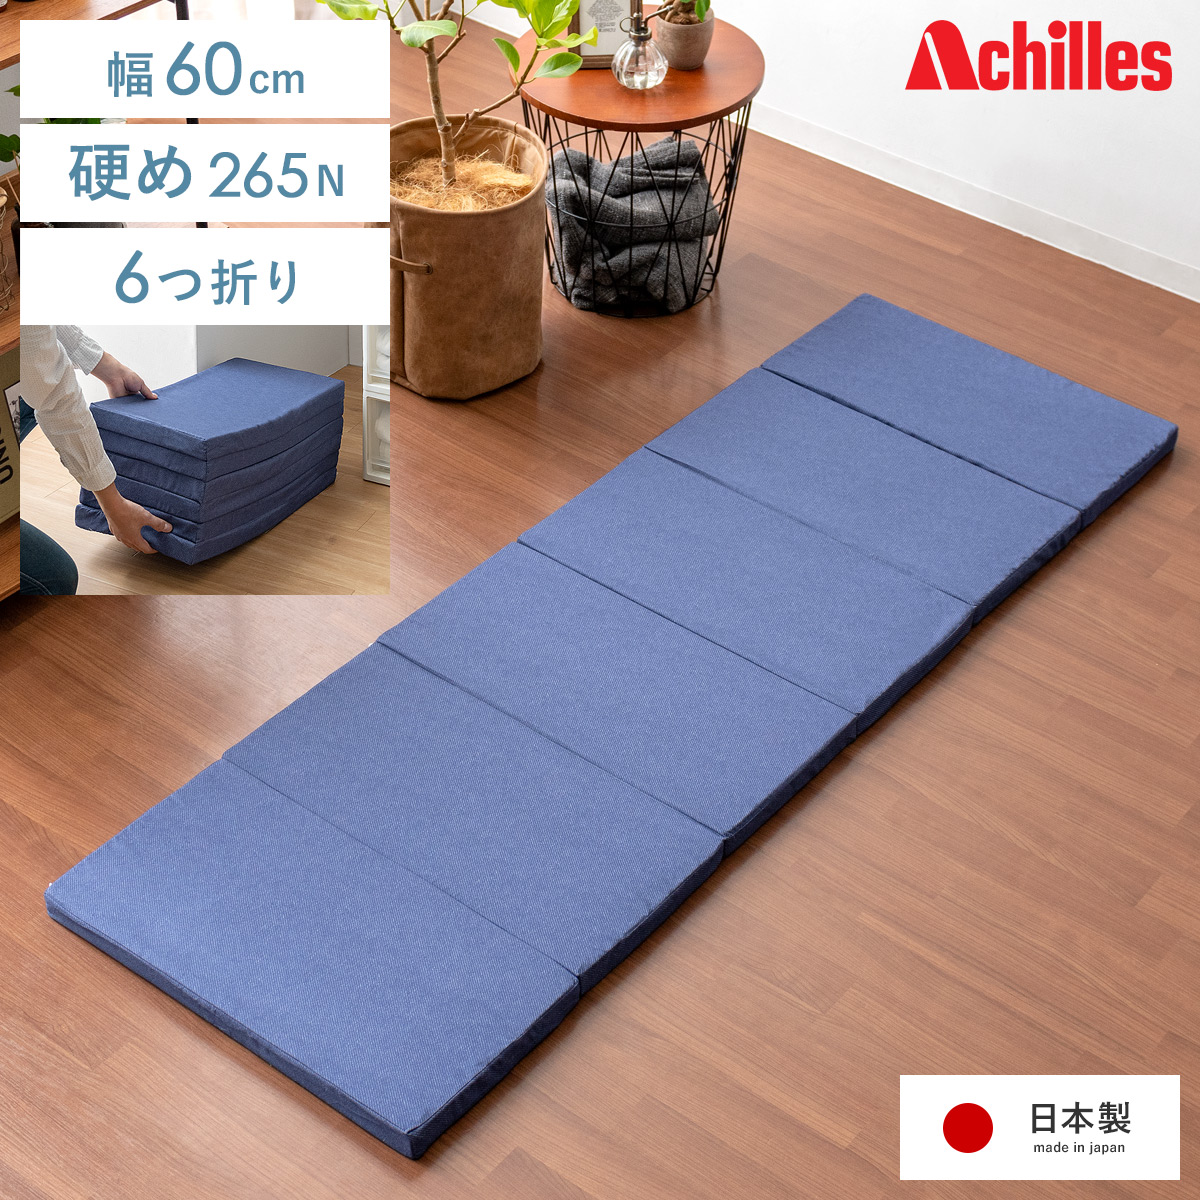 アキレス 6つ折りコンパクトマットレス 60cm幅 【公式】 エア・リゾーム インテリア・家具通販